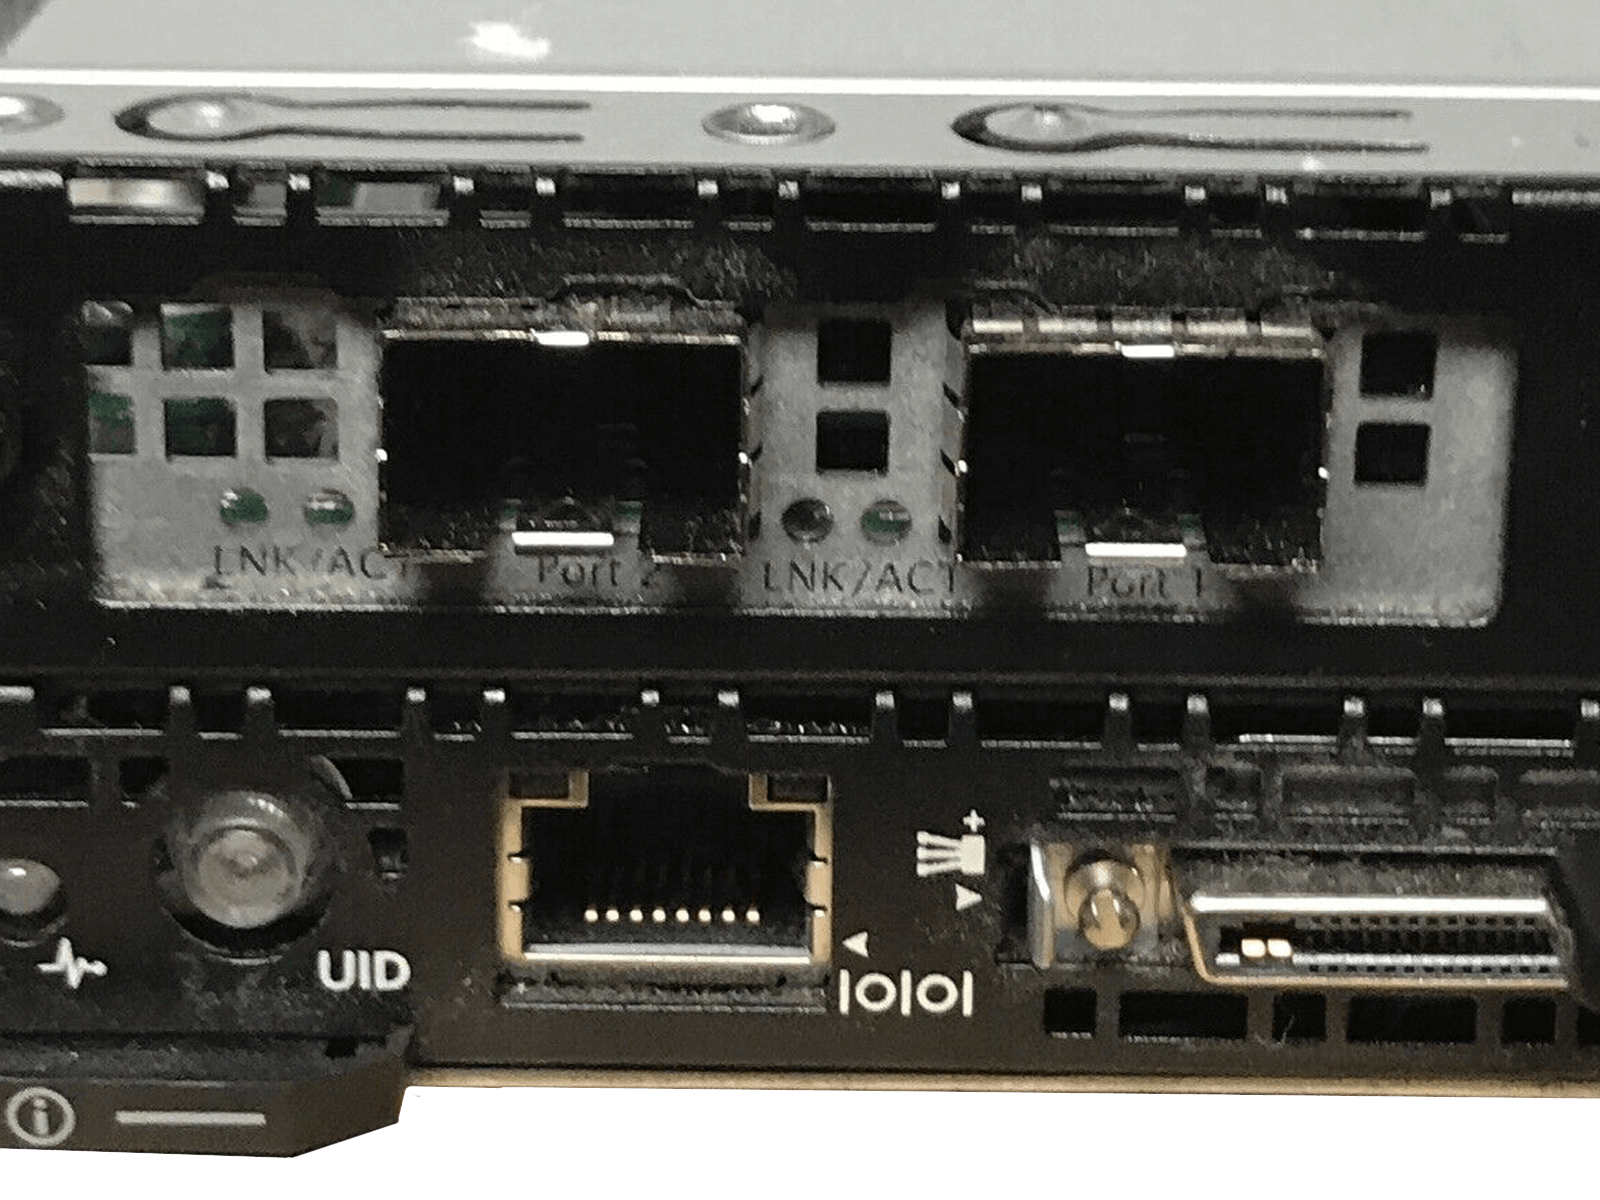 HP ProLiant S6500 8x SL230s 16x E5-2650V2 8x 128GB 16x S3700 200GB SSD Rails.